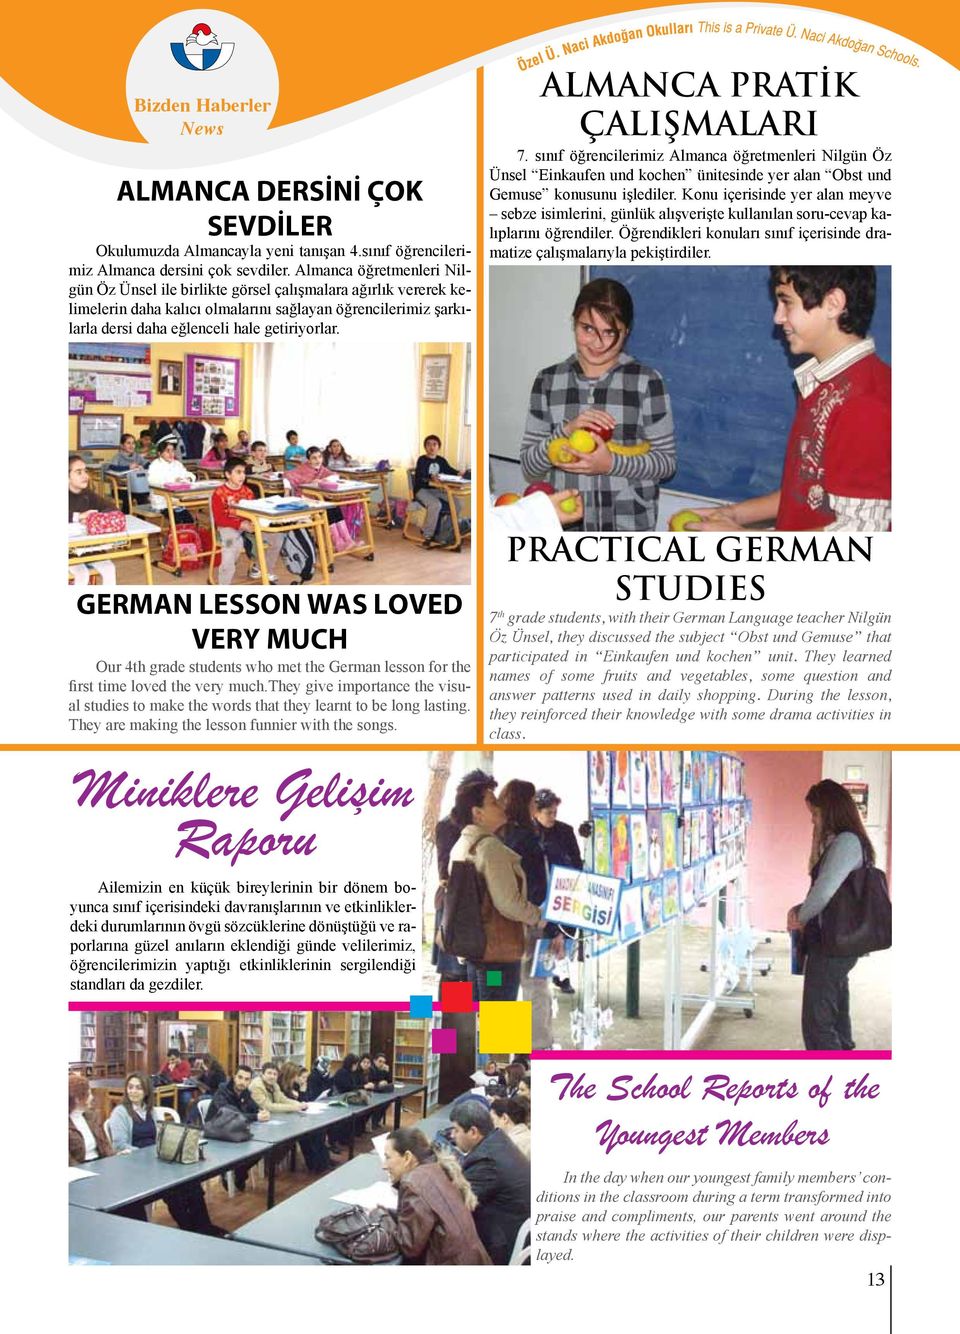 ALMANCA PRATİK ÇALIŞMALARI 7. sınıf öğrencilerimiz Almanca öğretmenleri Nilgün Öz Ünsel Einkaufen und kochen ünitesinde yer alan Obst und Gemuse konusunu işlediler.